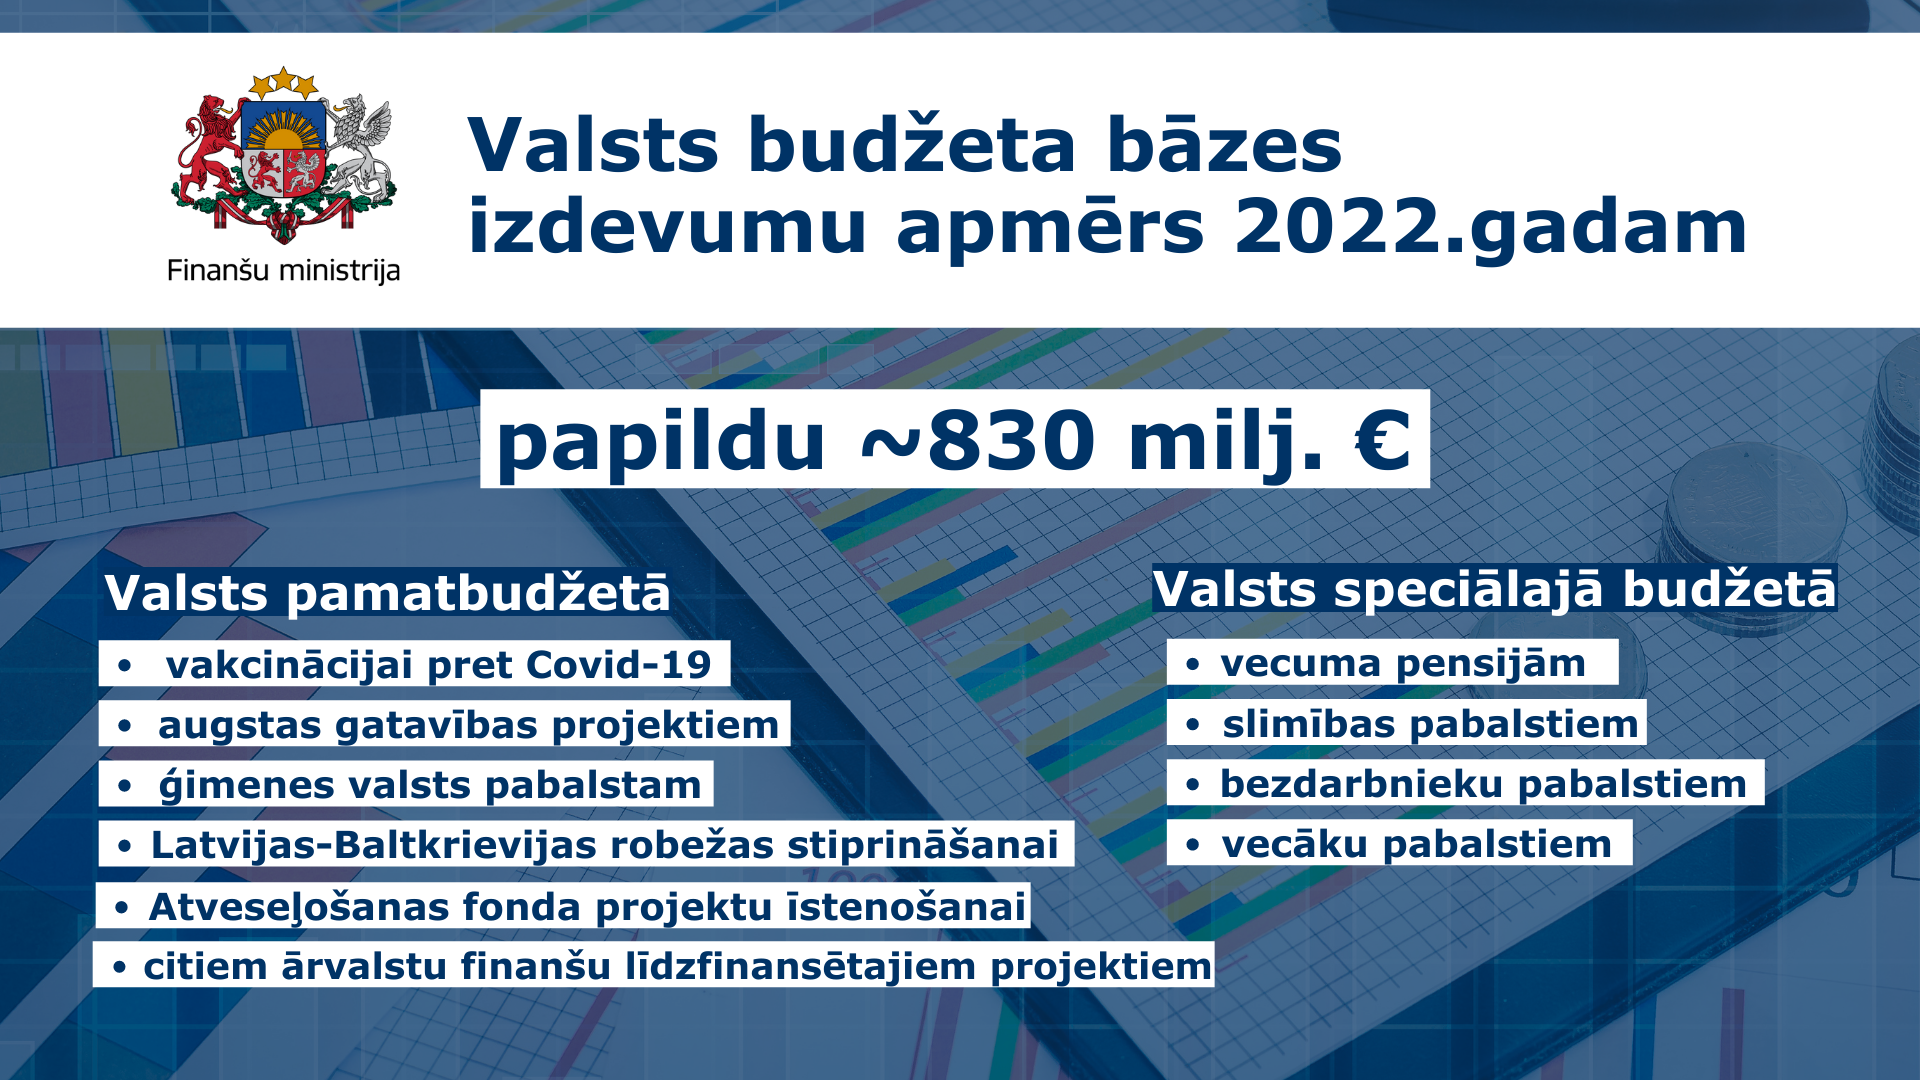 Valsts budžeta bāzes izdevumu apmērs 2022.gadam